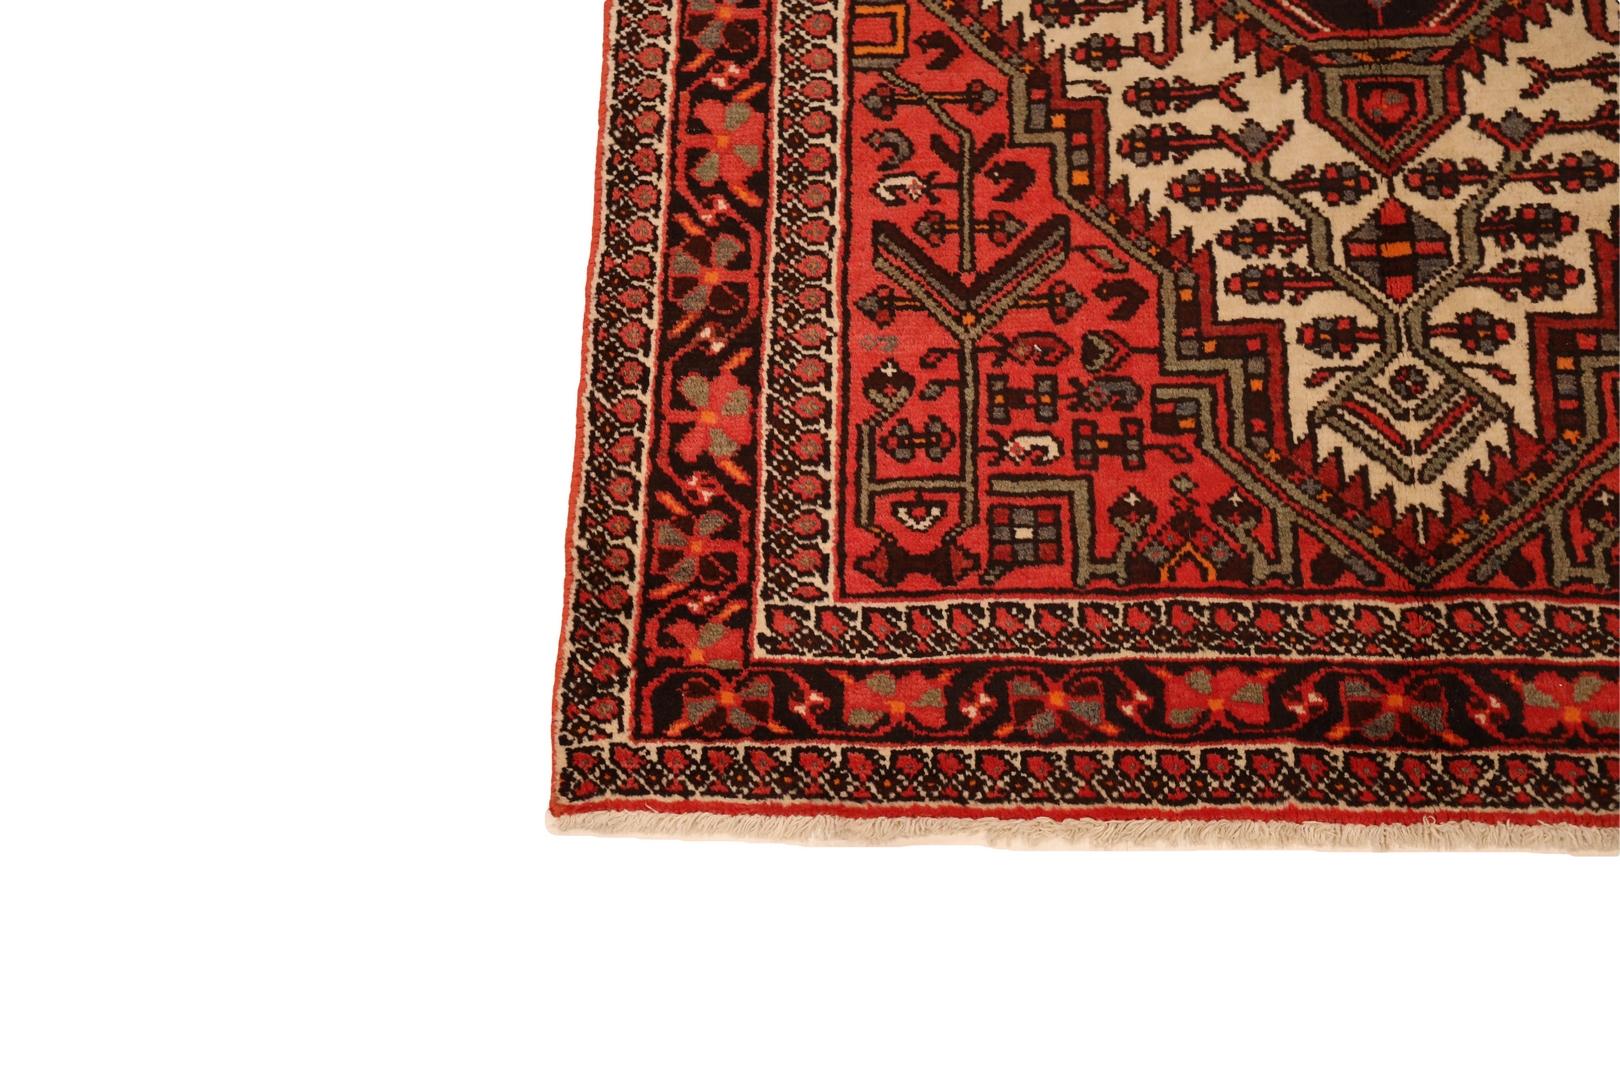 Voici l'exquis tapis Eleg, un témoignage de simplicité et d'élégance dans chaque fil. Le tapis présente un fond rouge doux et accueillant qui ouvre la voie à un médaillon ivoire plus grand, devenant une toile pour la beauté délicate qui se déploie à